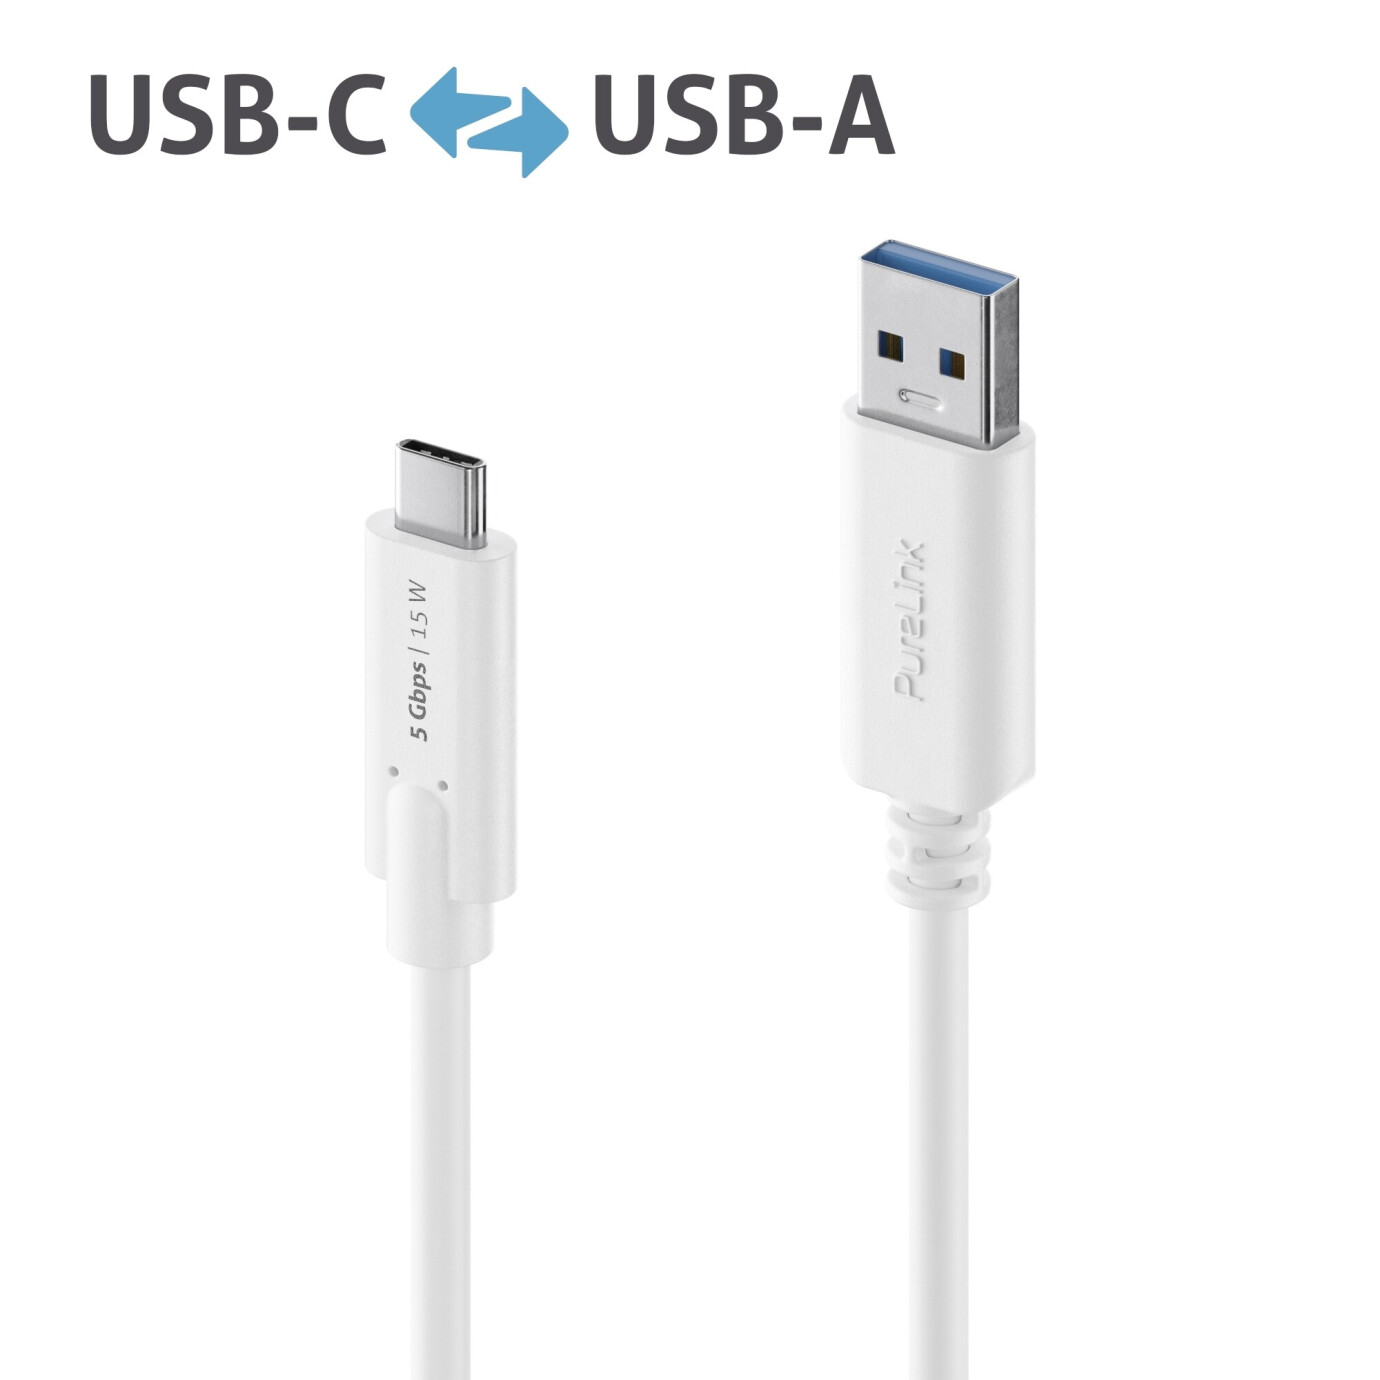 Purelink IS2600-015 USB-C auf USB-A Kabel 1,5m weiß